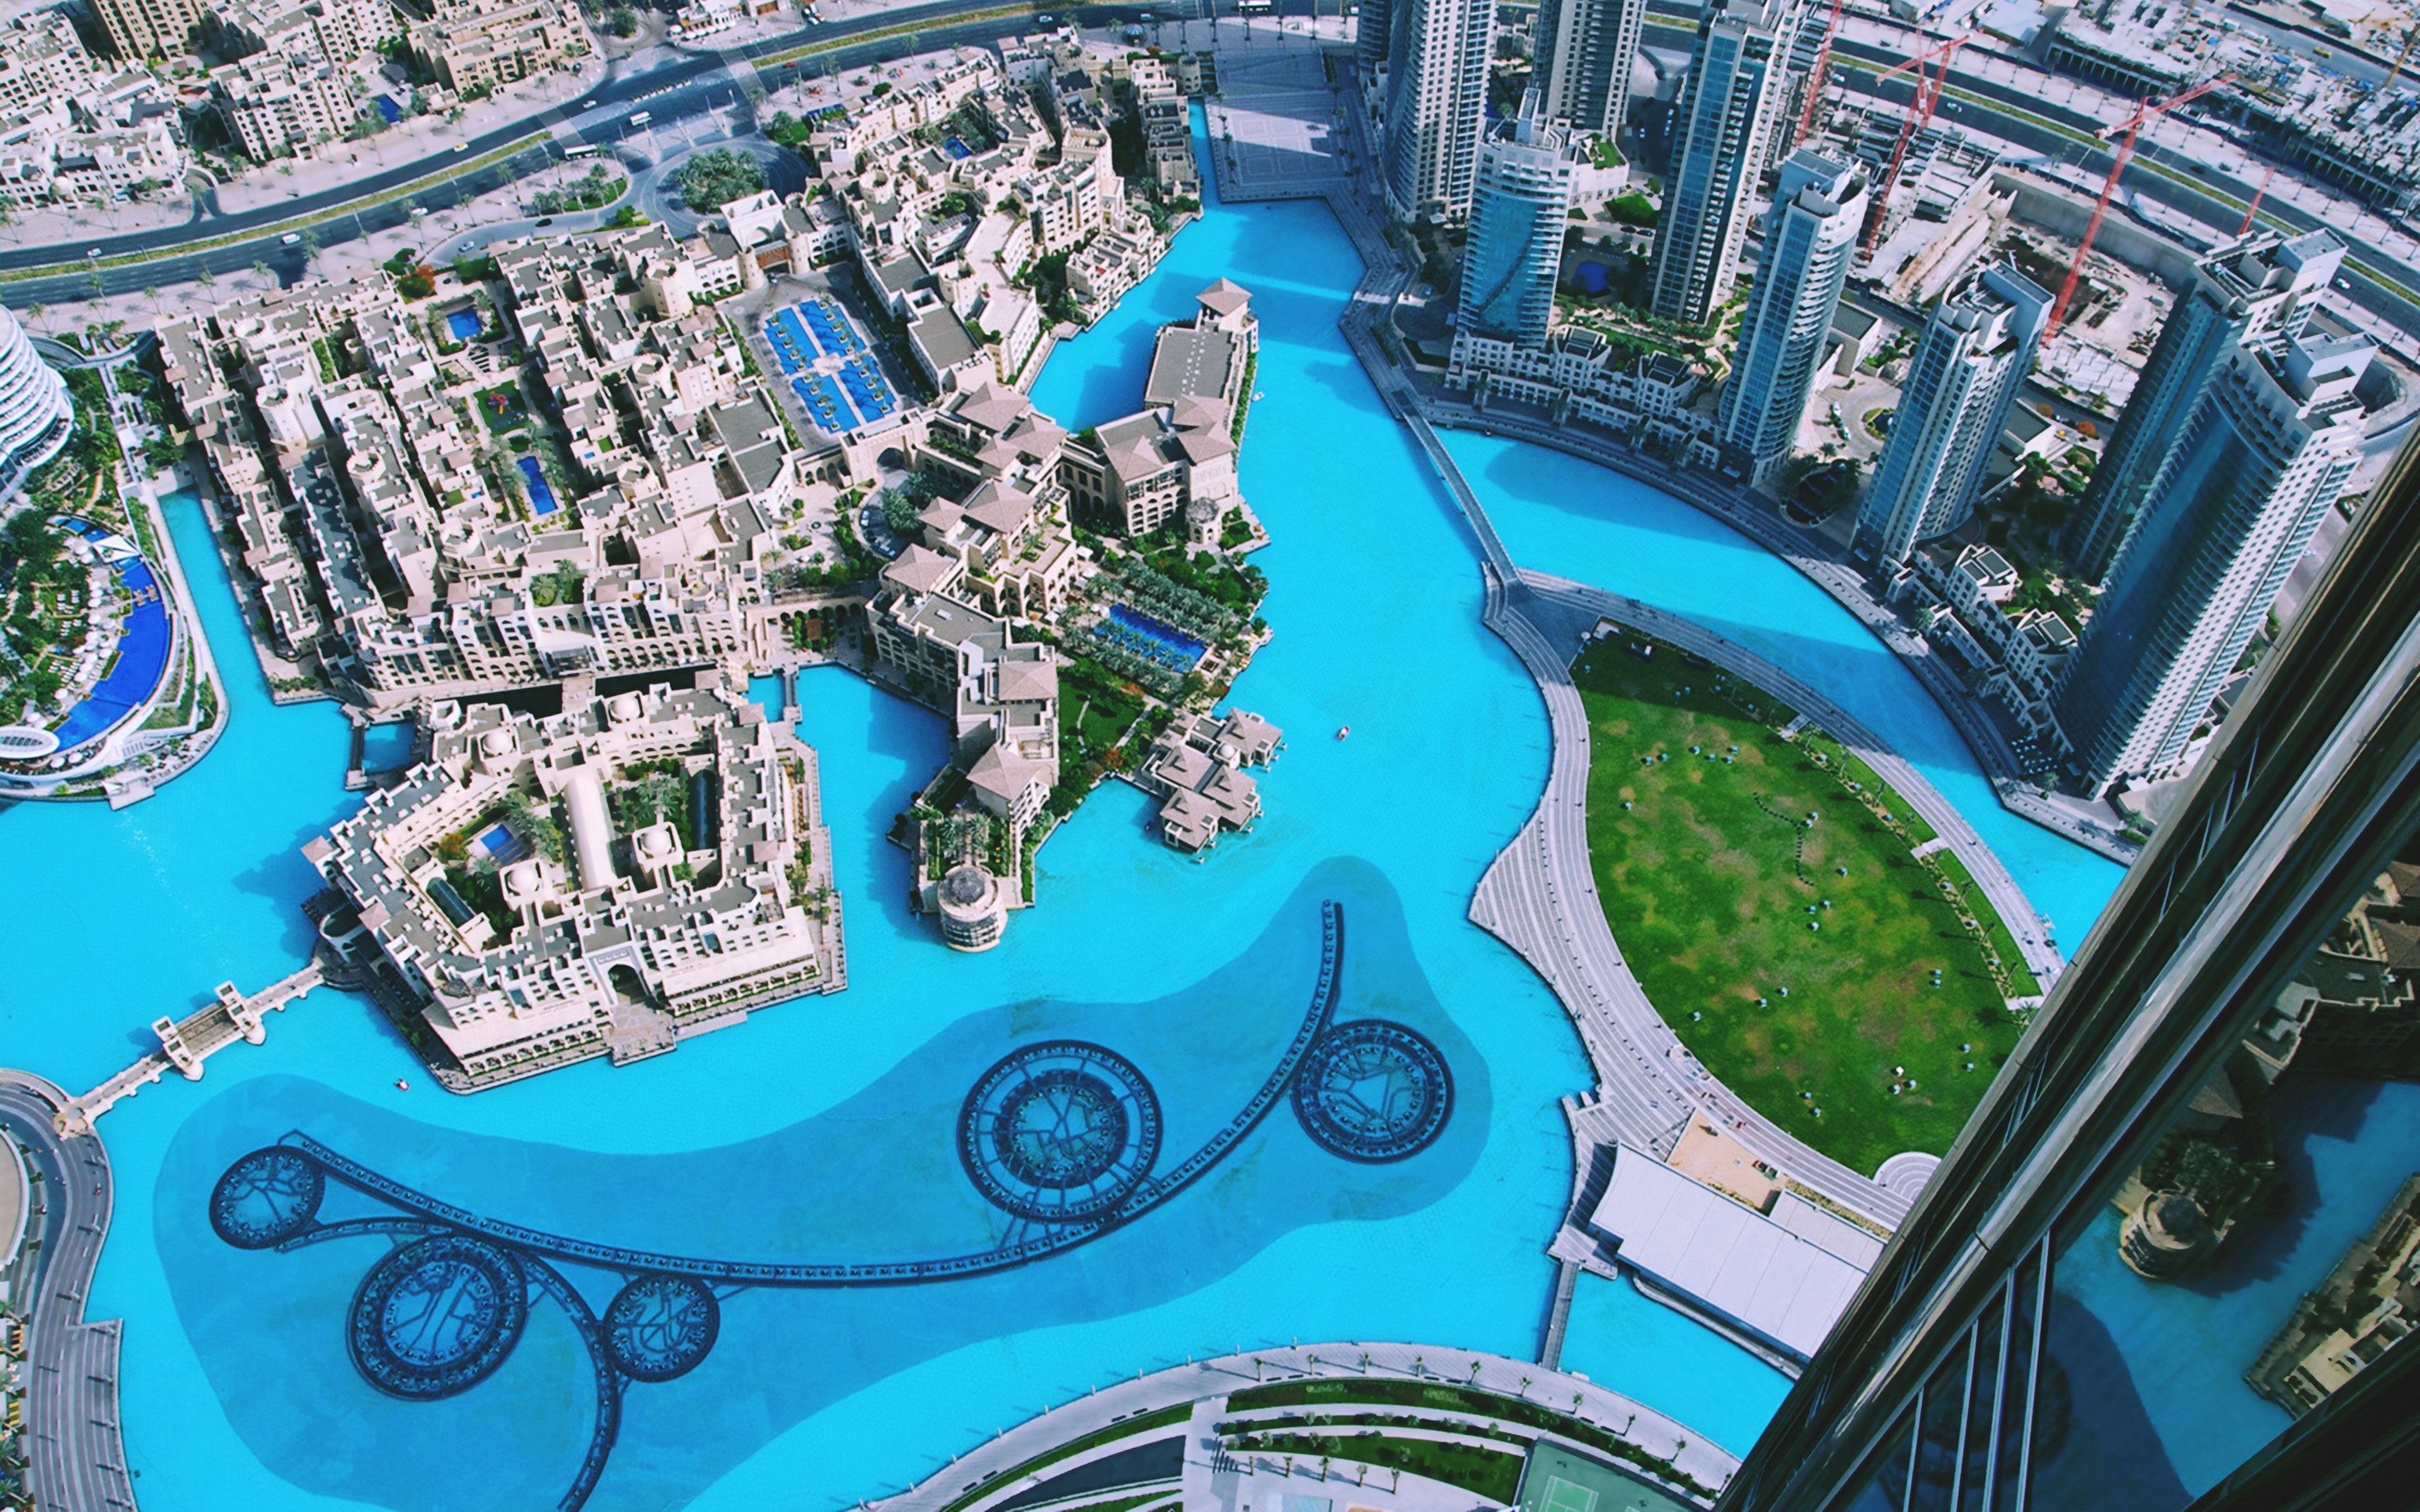 Dubai - thành phố của những cảm giác trái ngược nhau. Với các tòa nhà cao nhất thế giới, sa mạc cát trắng và biển xanh như ngọc, Dubai là một trong những điểm đến tuyệt vời nhất của thế giới. Bức ảnh cho thấy vẻ đẹp nổi bật của thành phố này cùng với lối sống mênh mông đang chờ đón bạn. 